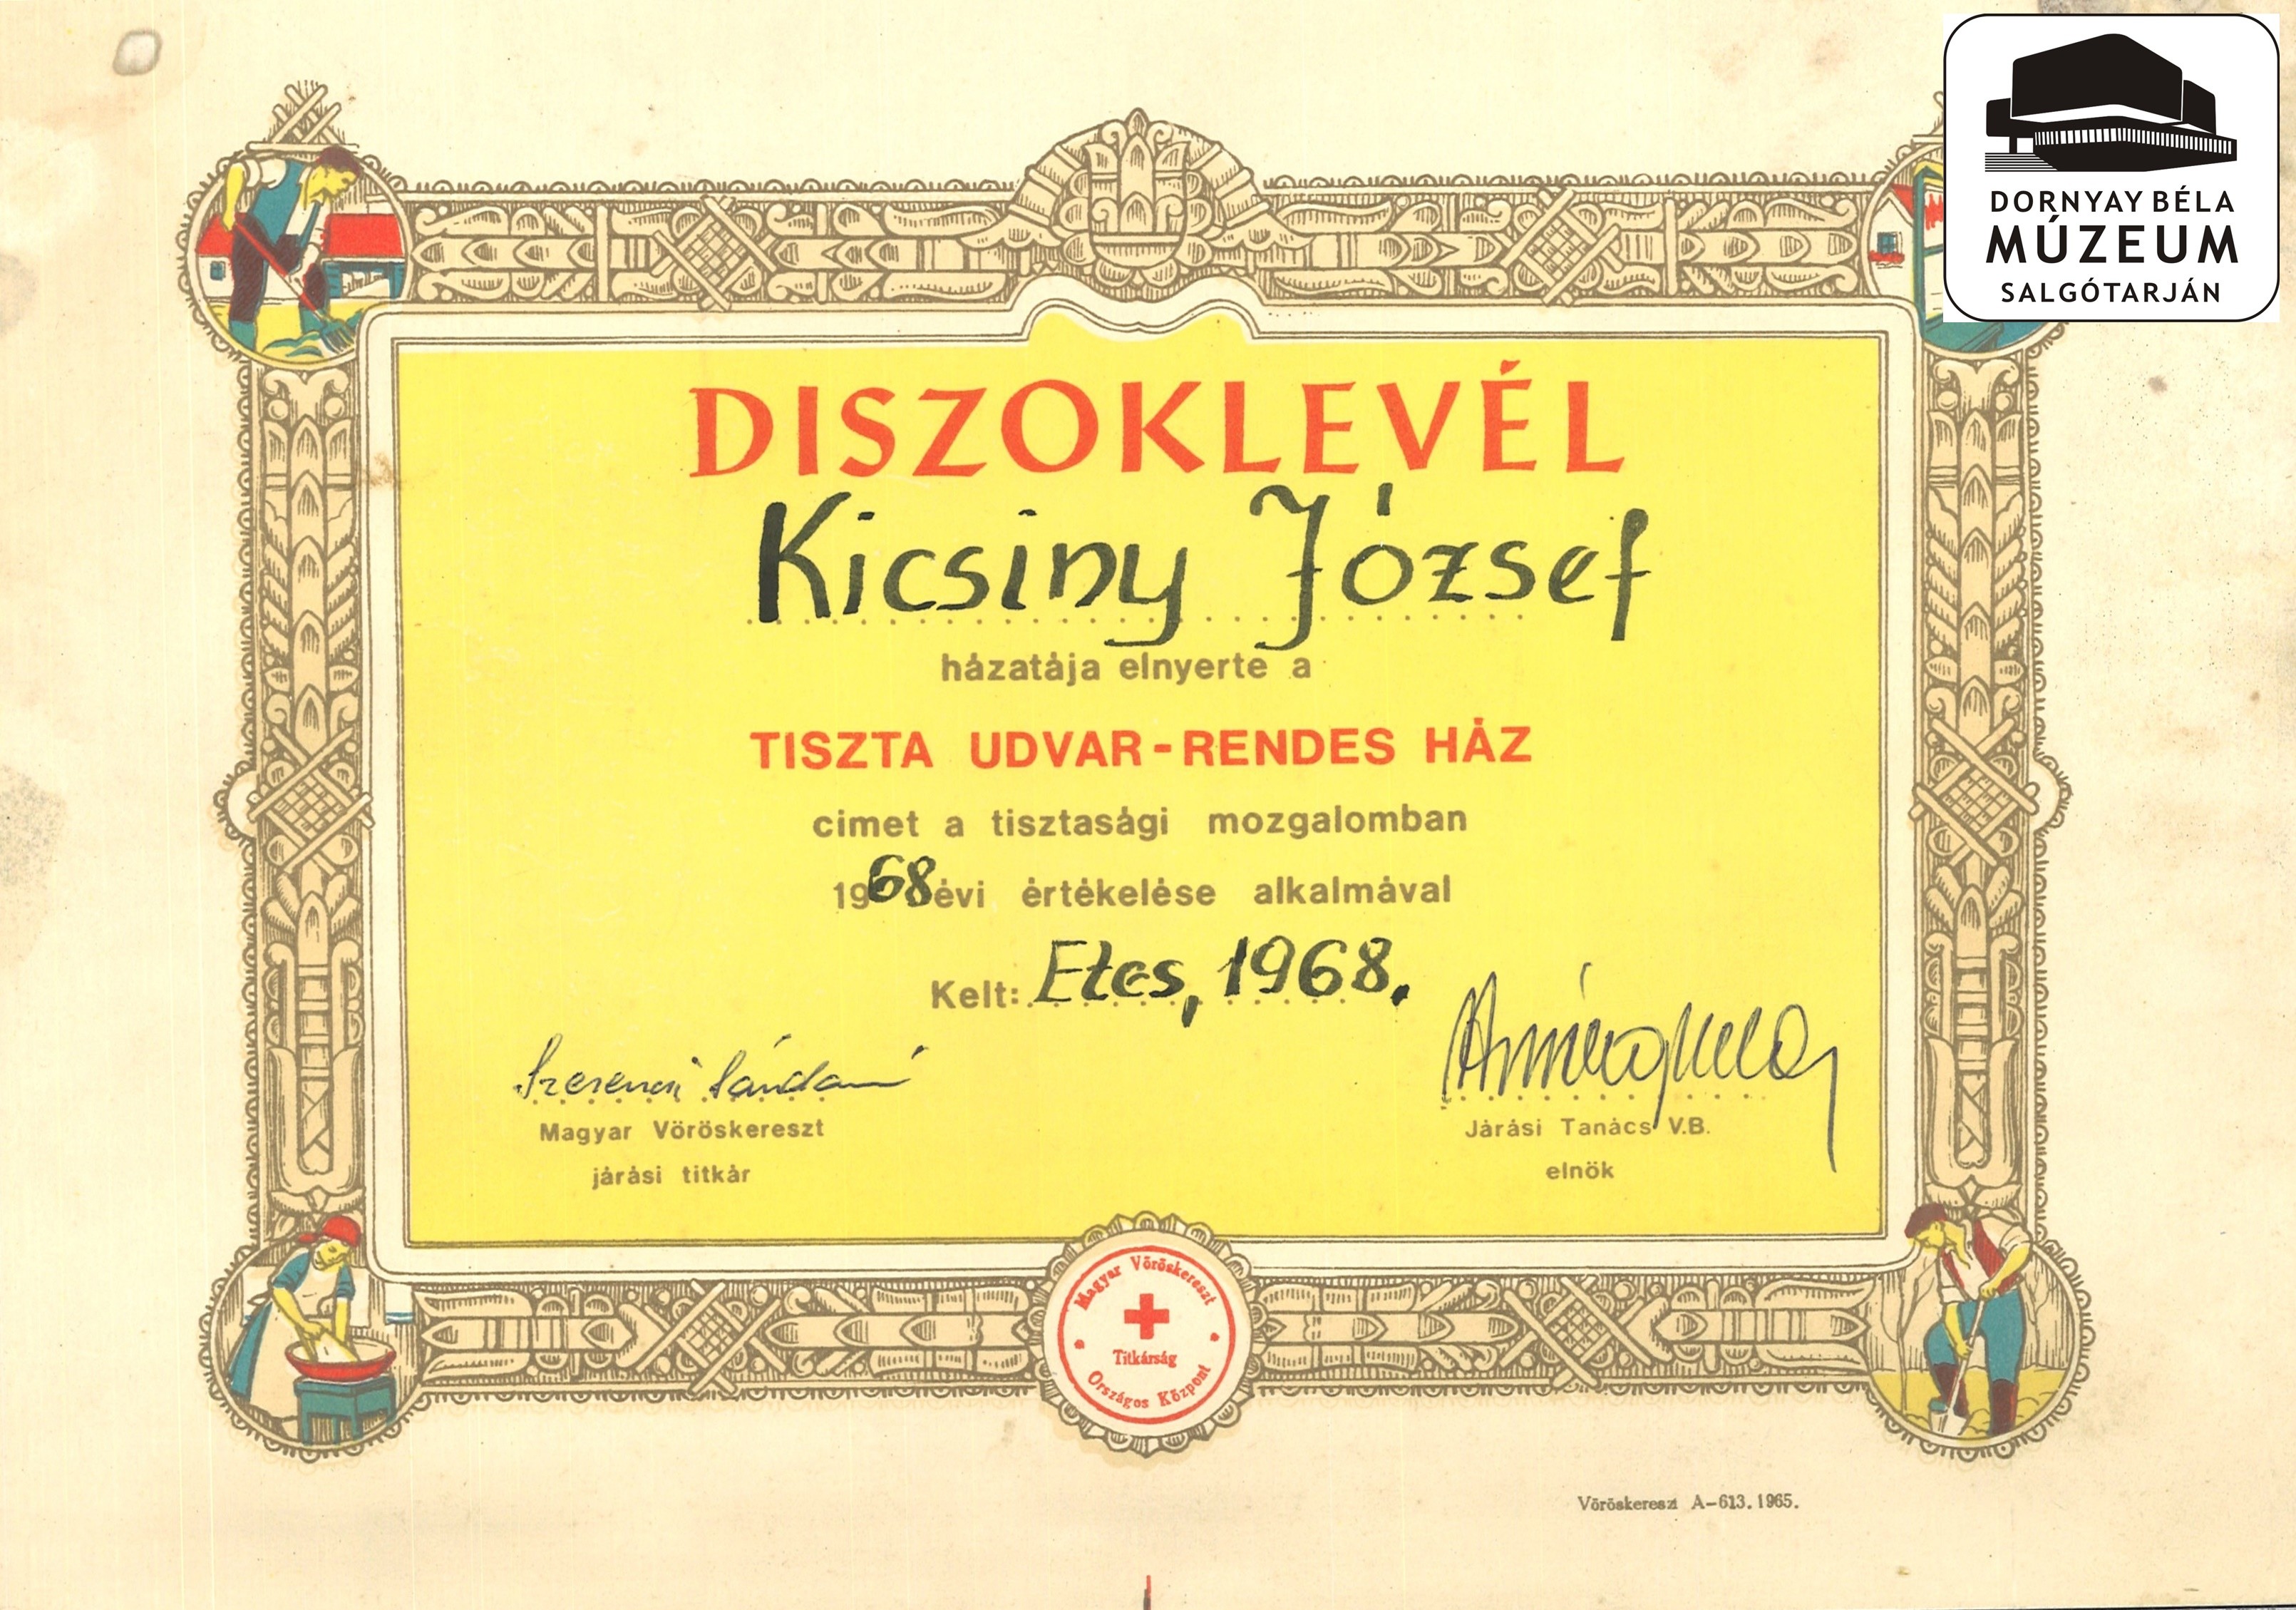 Kicsiny József emléklapjai és díszoklevelei (Dornyay Béla Múzeum, Salgótarján CC BY-NC-SA)